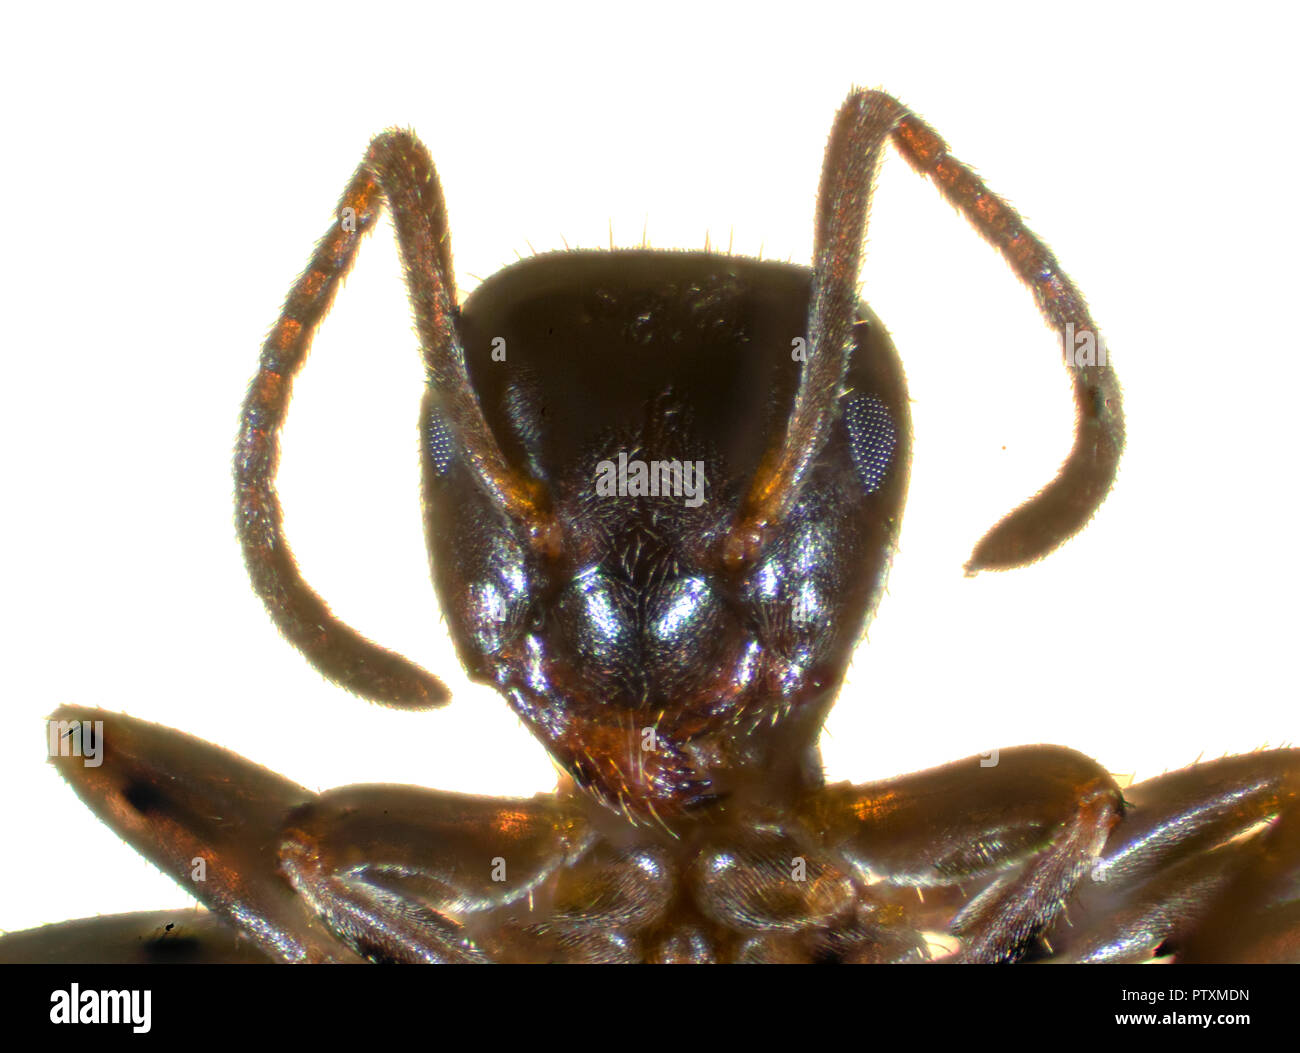 Le jardin noir (Fourmi Lasius niger), également connu sous le nom de la fourmi noire commune, est une formicine ant, l'espèce type du sous-genre Lasius. Banque D'Images